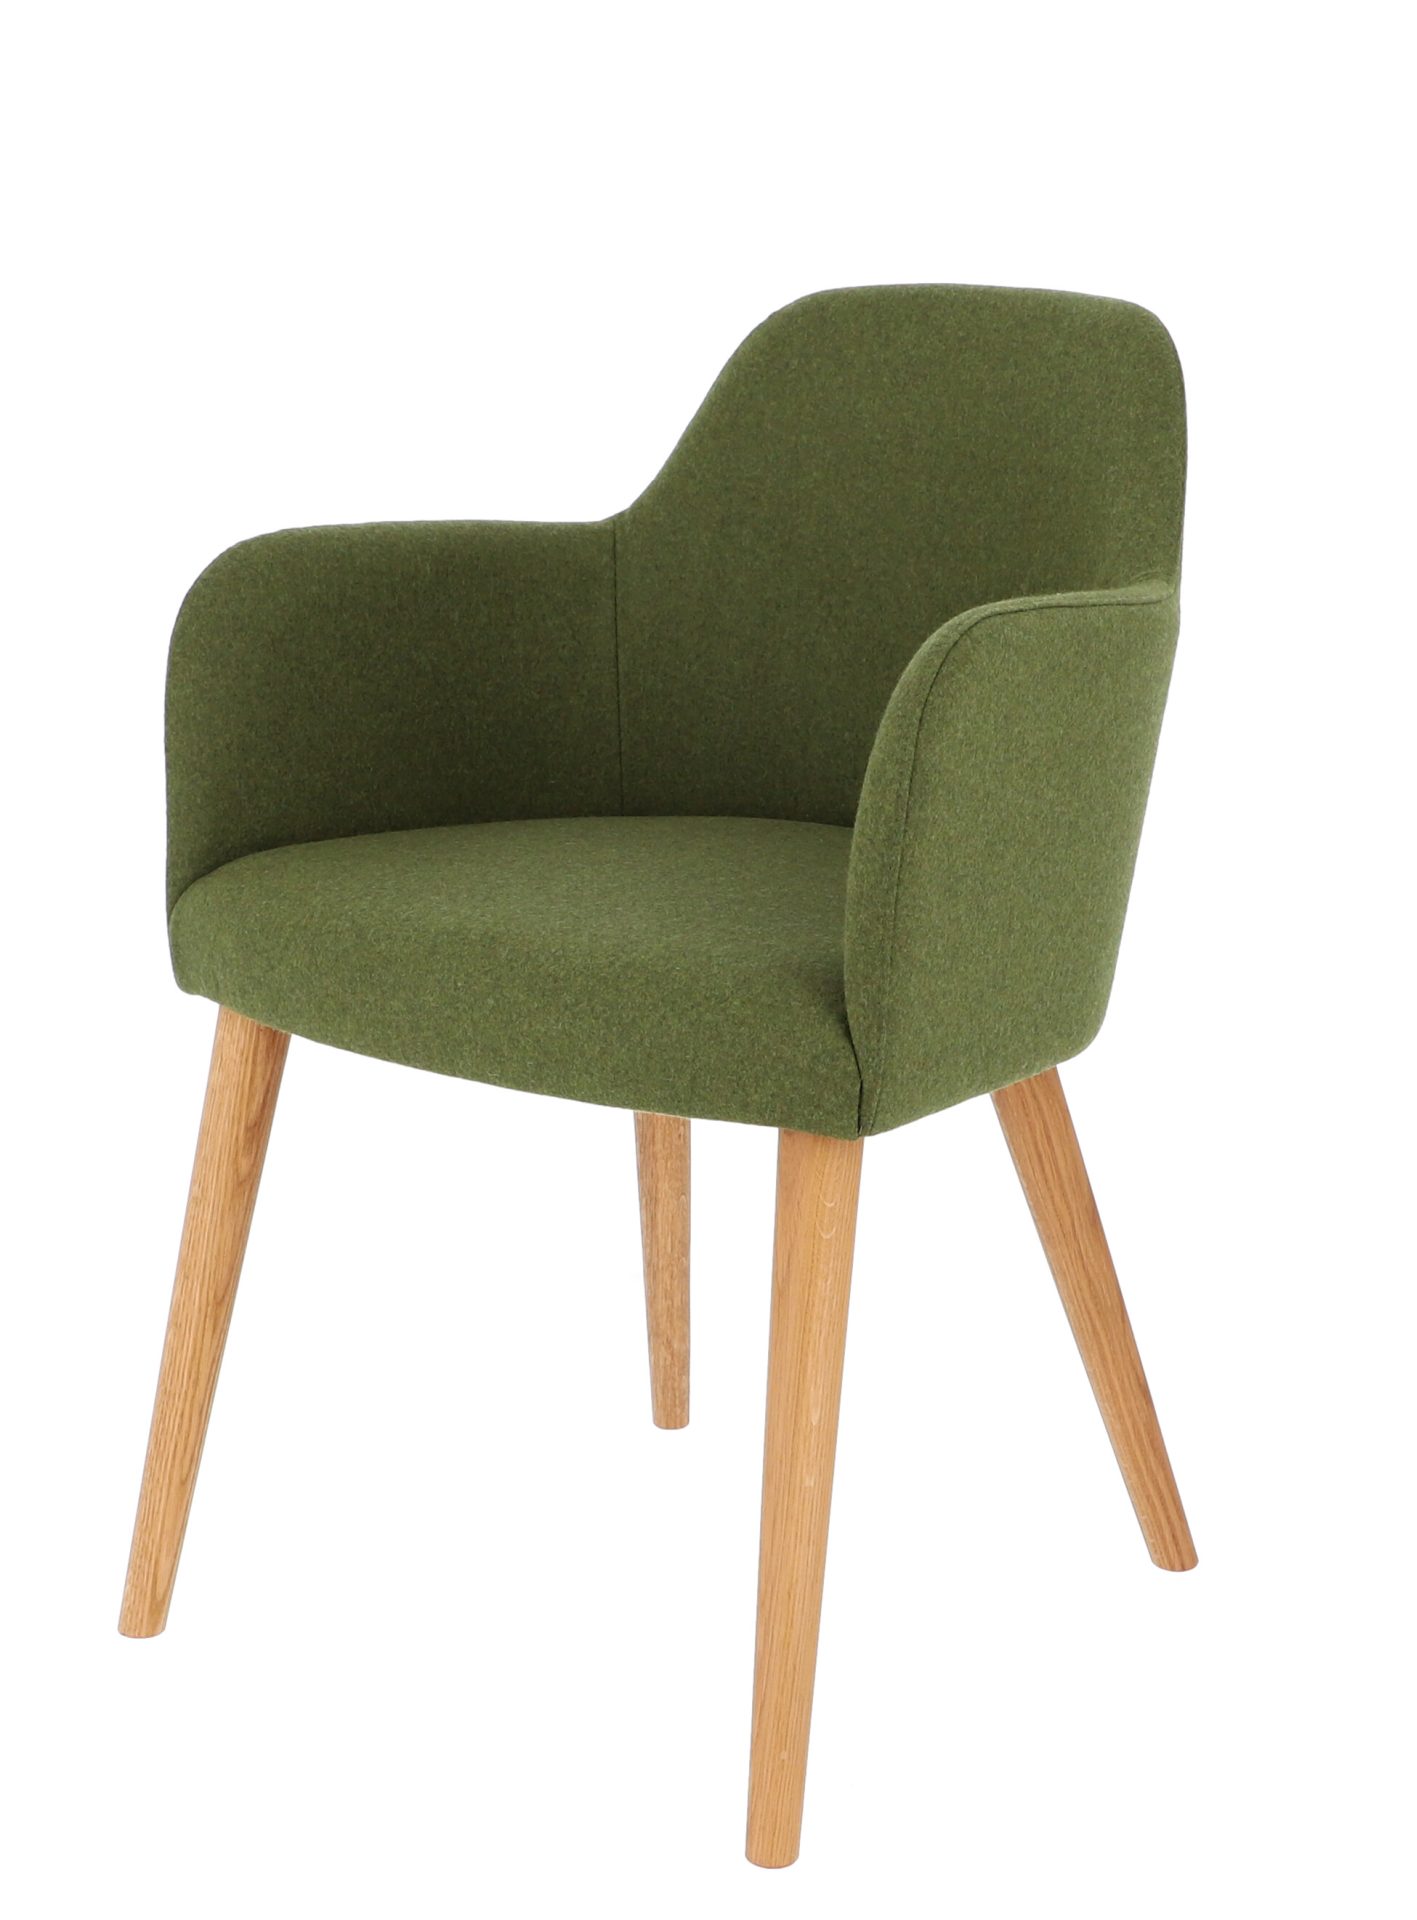 Der Sessel Flaminia wurde aus einem Eichenholz Gestell gefertigt. Die Sitz- und Rückenfläche ist aus Wolle. Designet wurde der Sessel von der Marke Jan Kurtz und hat eine moosgrüne Farbe.